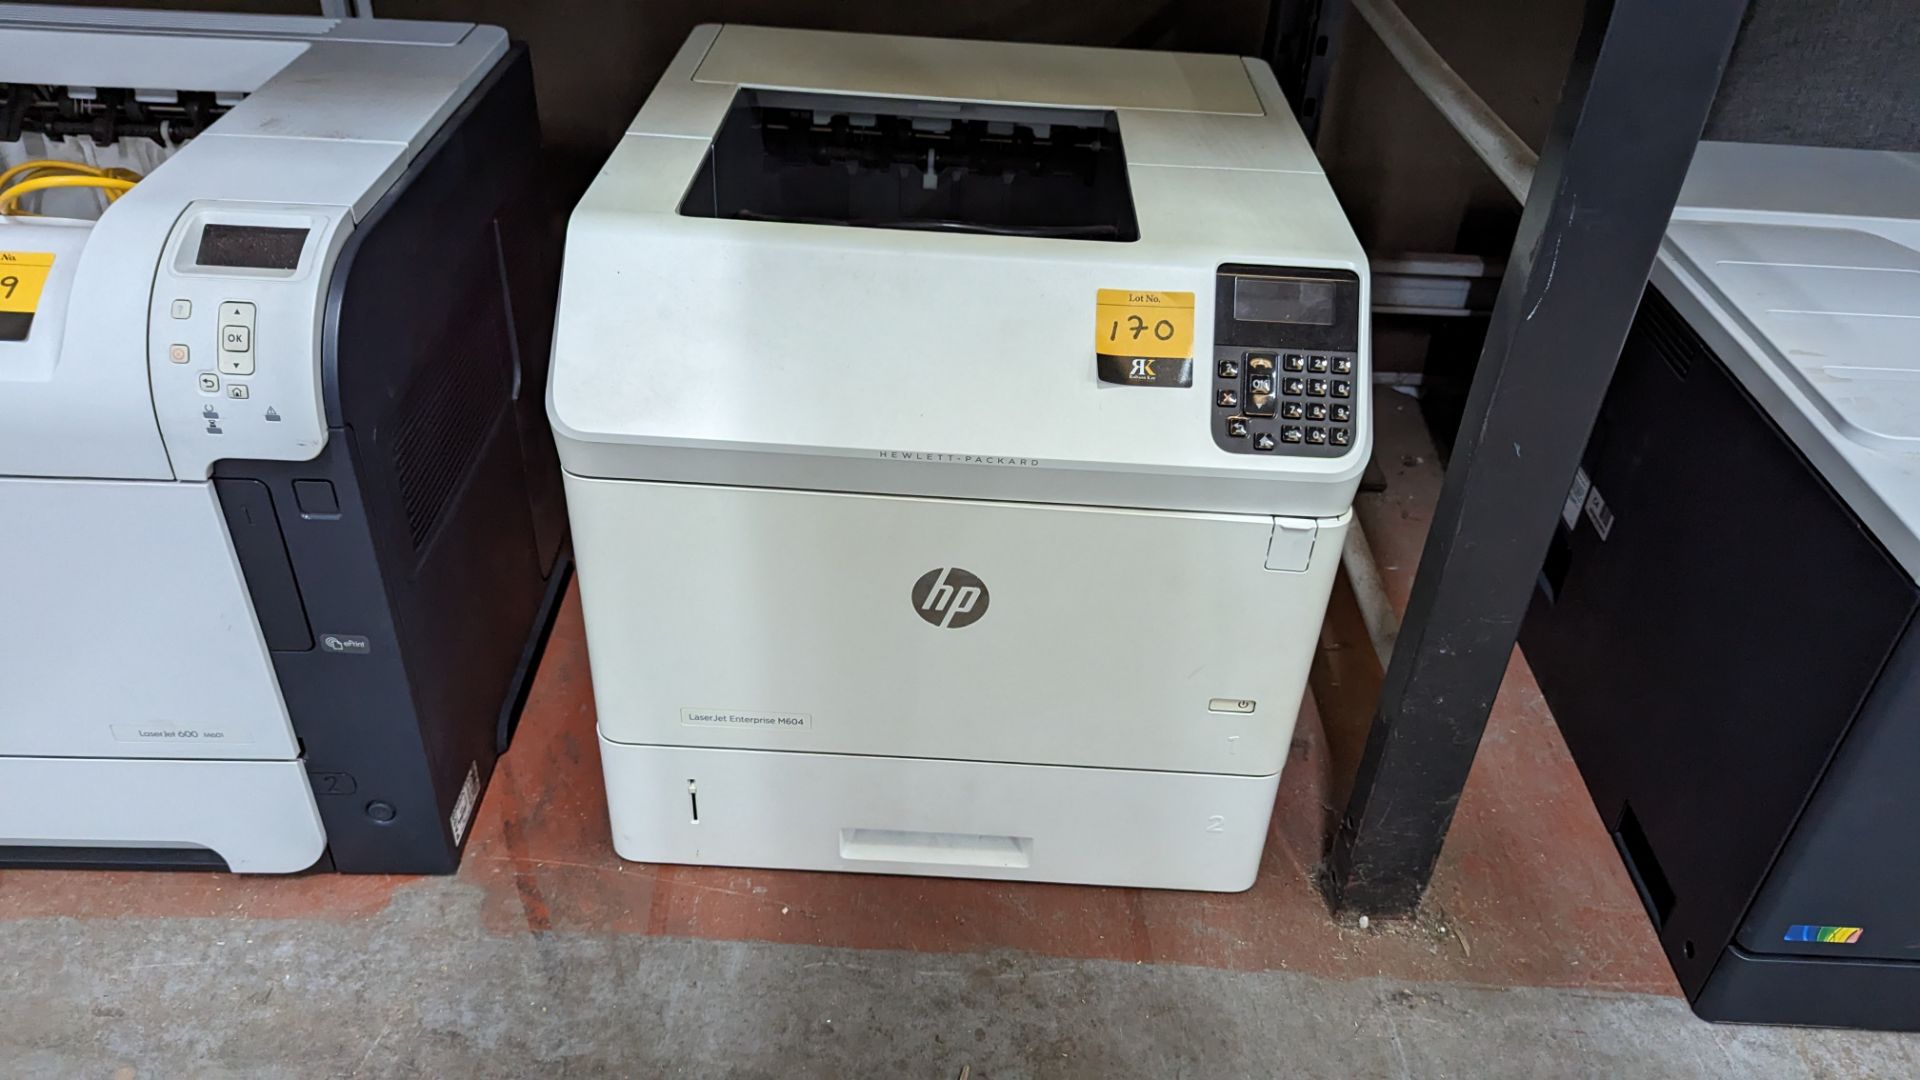 HP LaserJet Enterprise M604 printer - Image 2 of 6